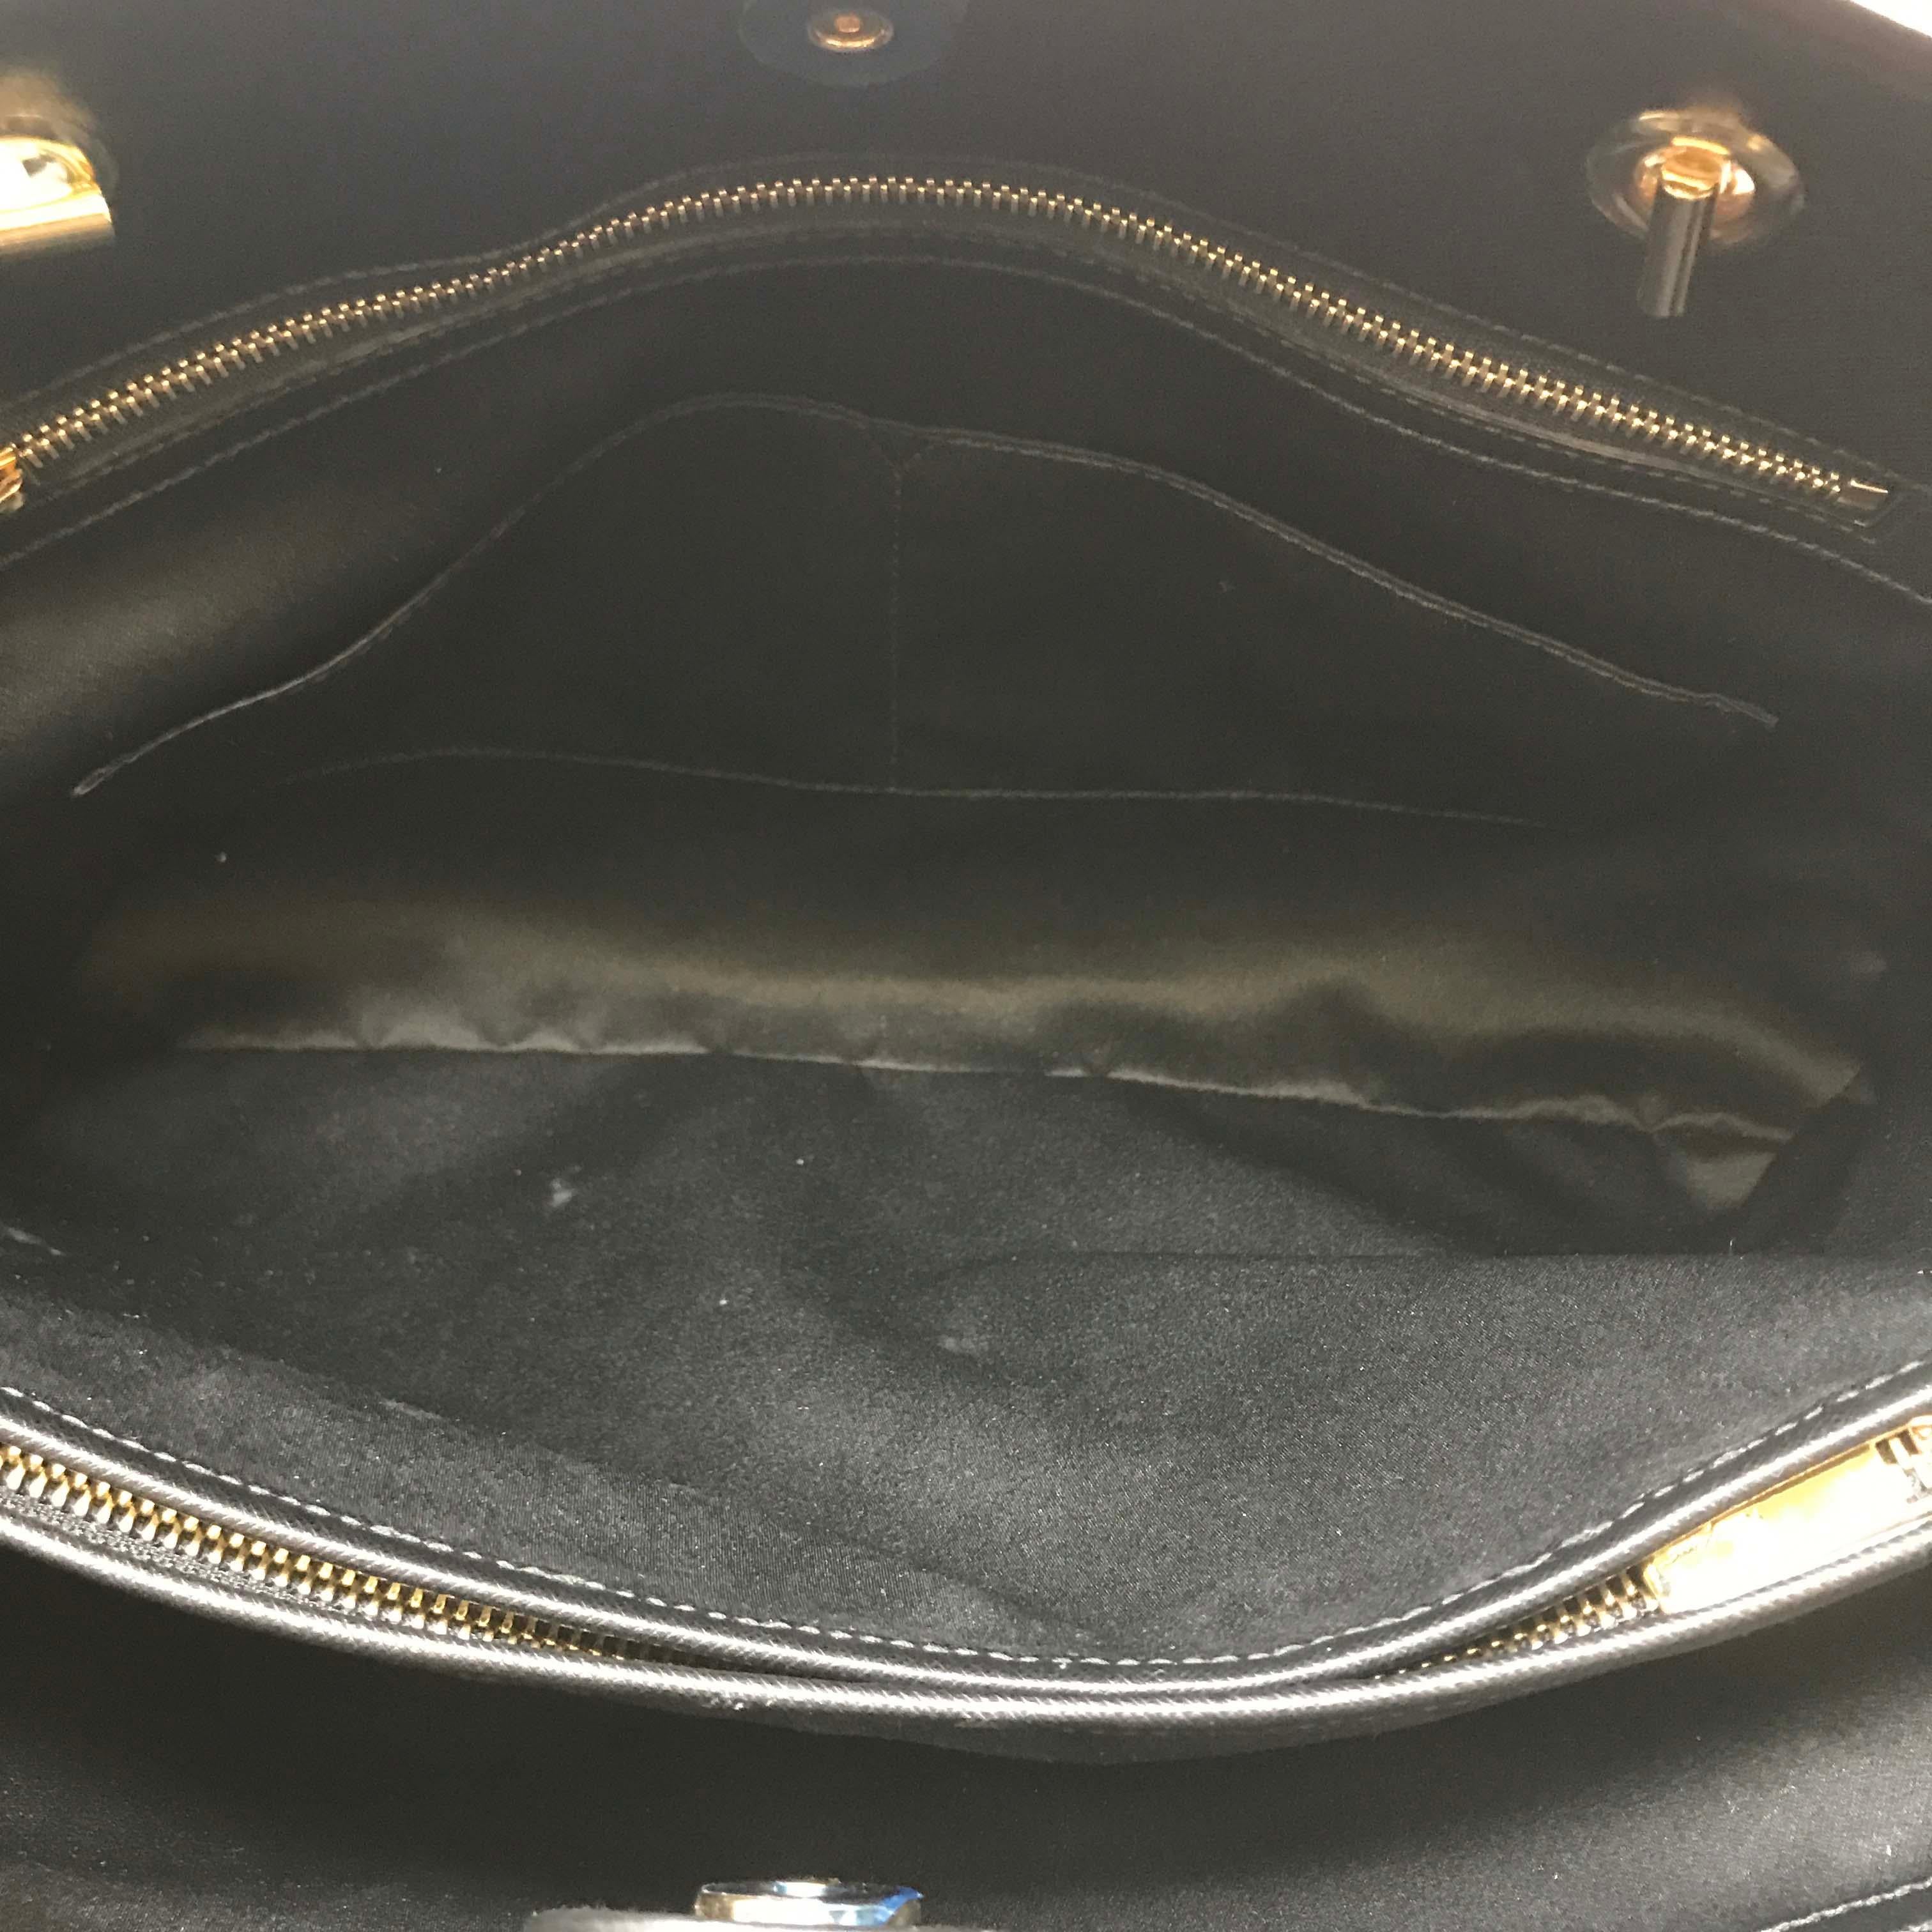 Black Salvatore Ferragamo 21-F561BK Vara Saffiano Leather Tote Women's Bag- MAKE OFFER